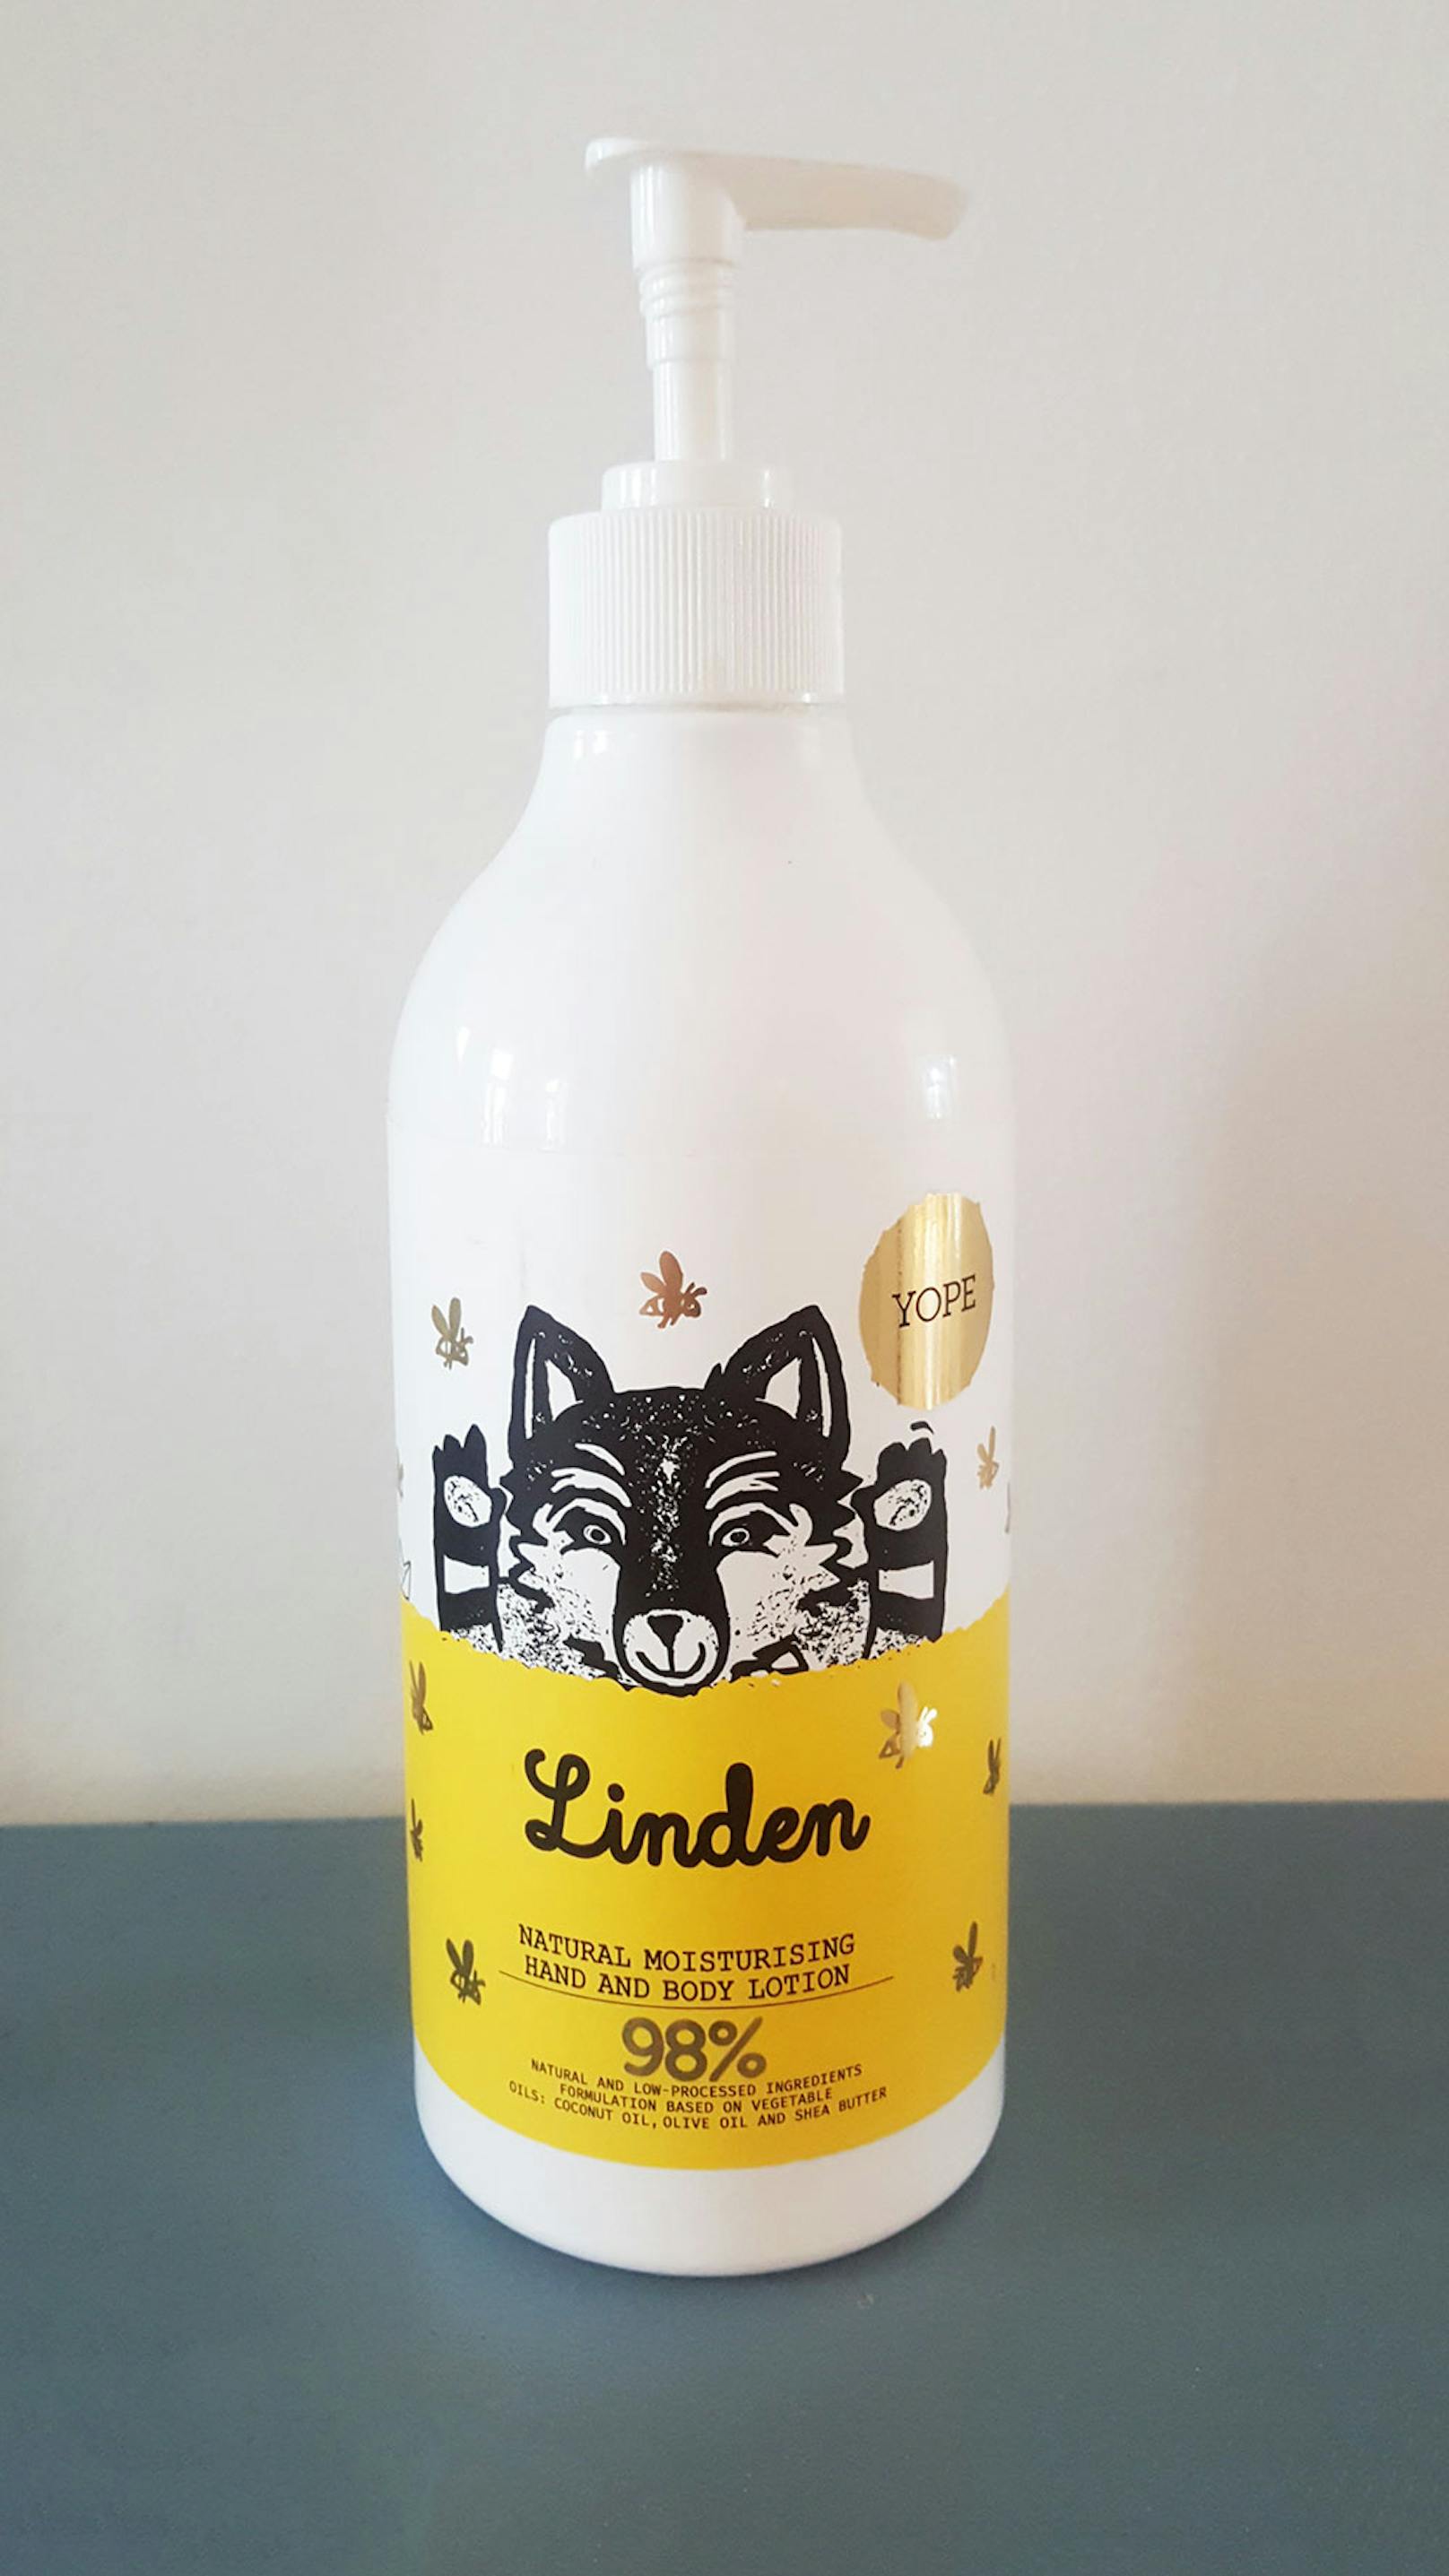 Eine Body Milk, die für die ganze Familie geeignet ist und natürliche Inhaltsstoffe hat! "Linden" von yopi duftet wunderbar nach Lindenblüten. Gesehen bei Staudigl.